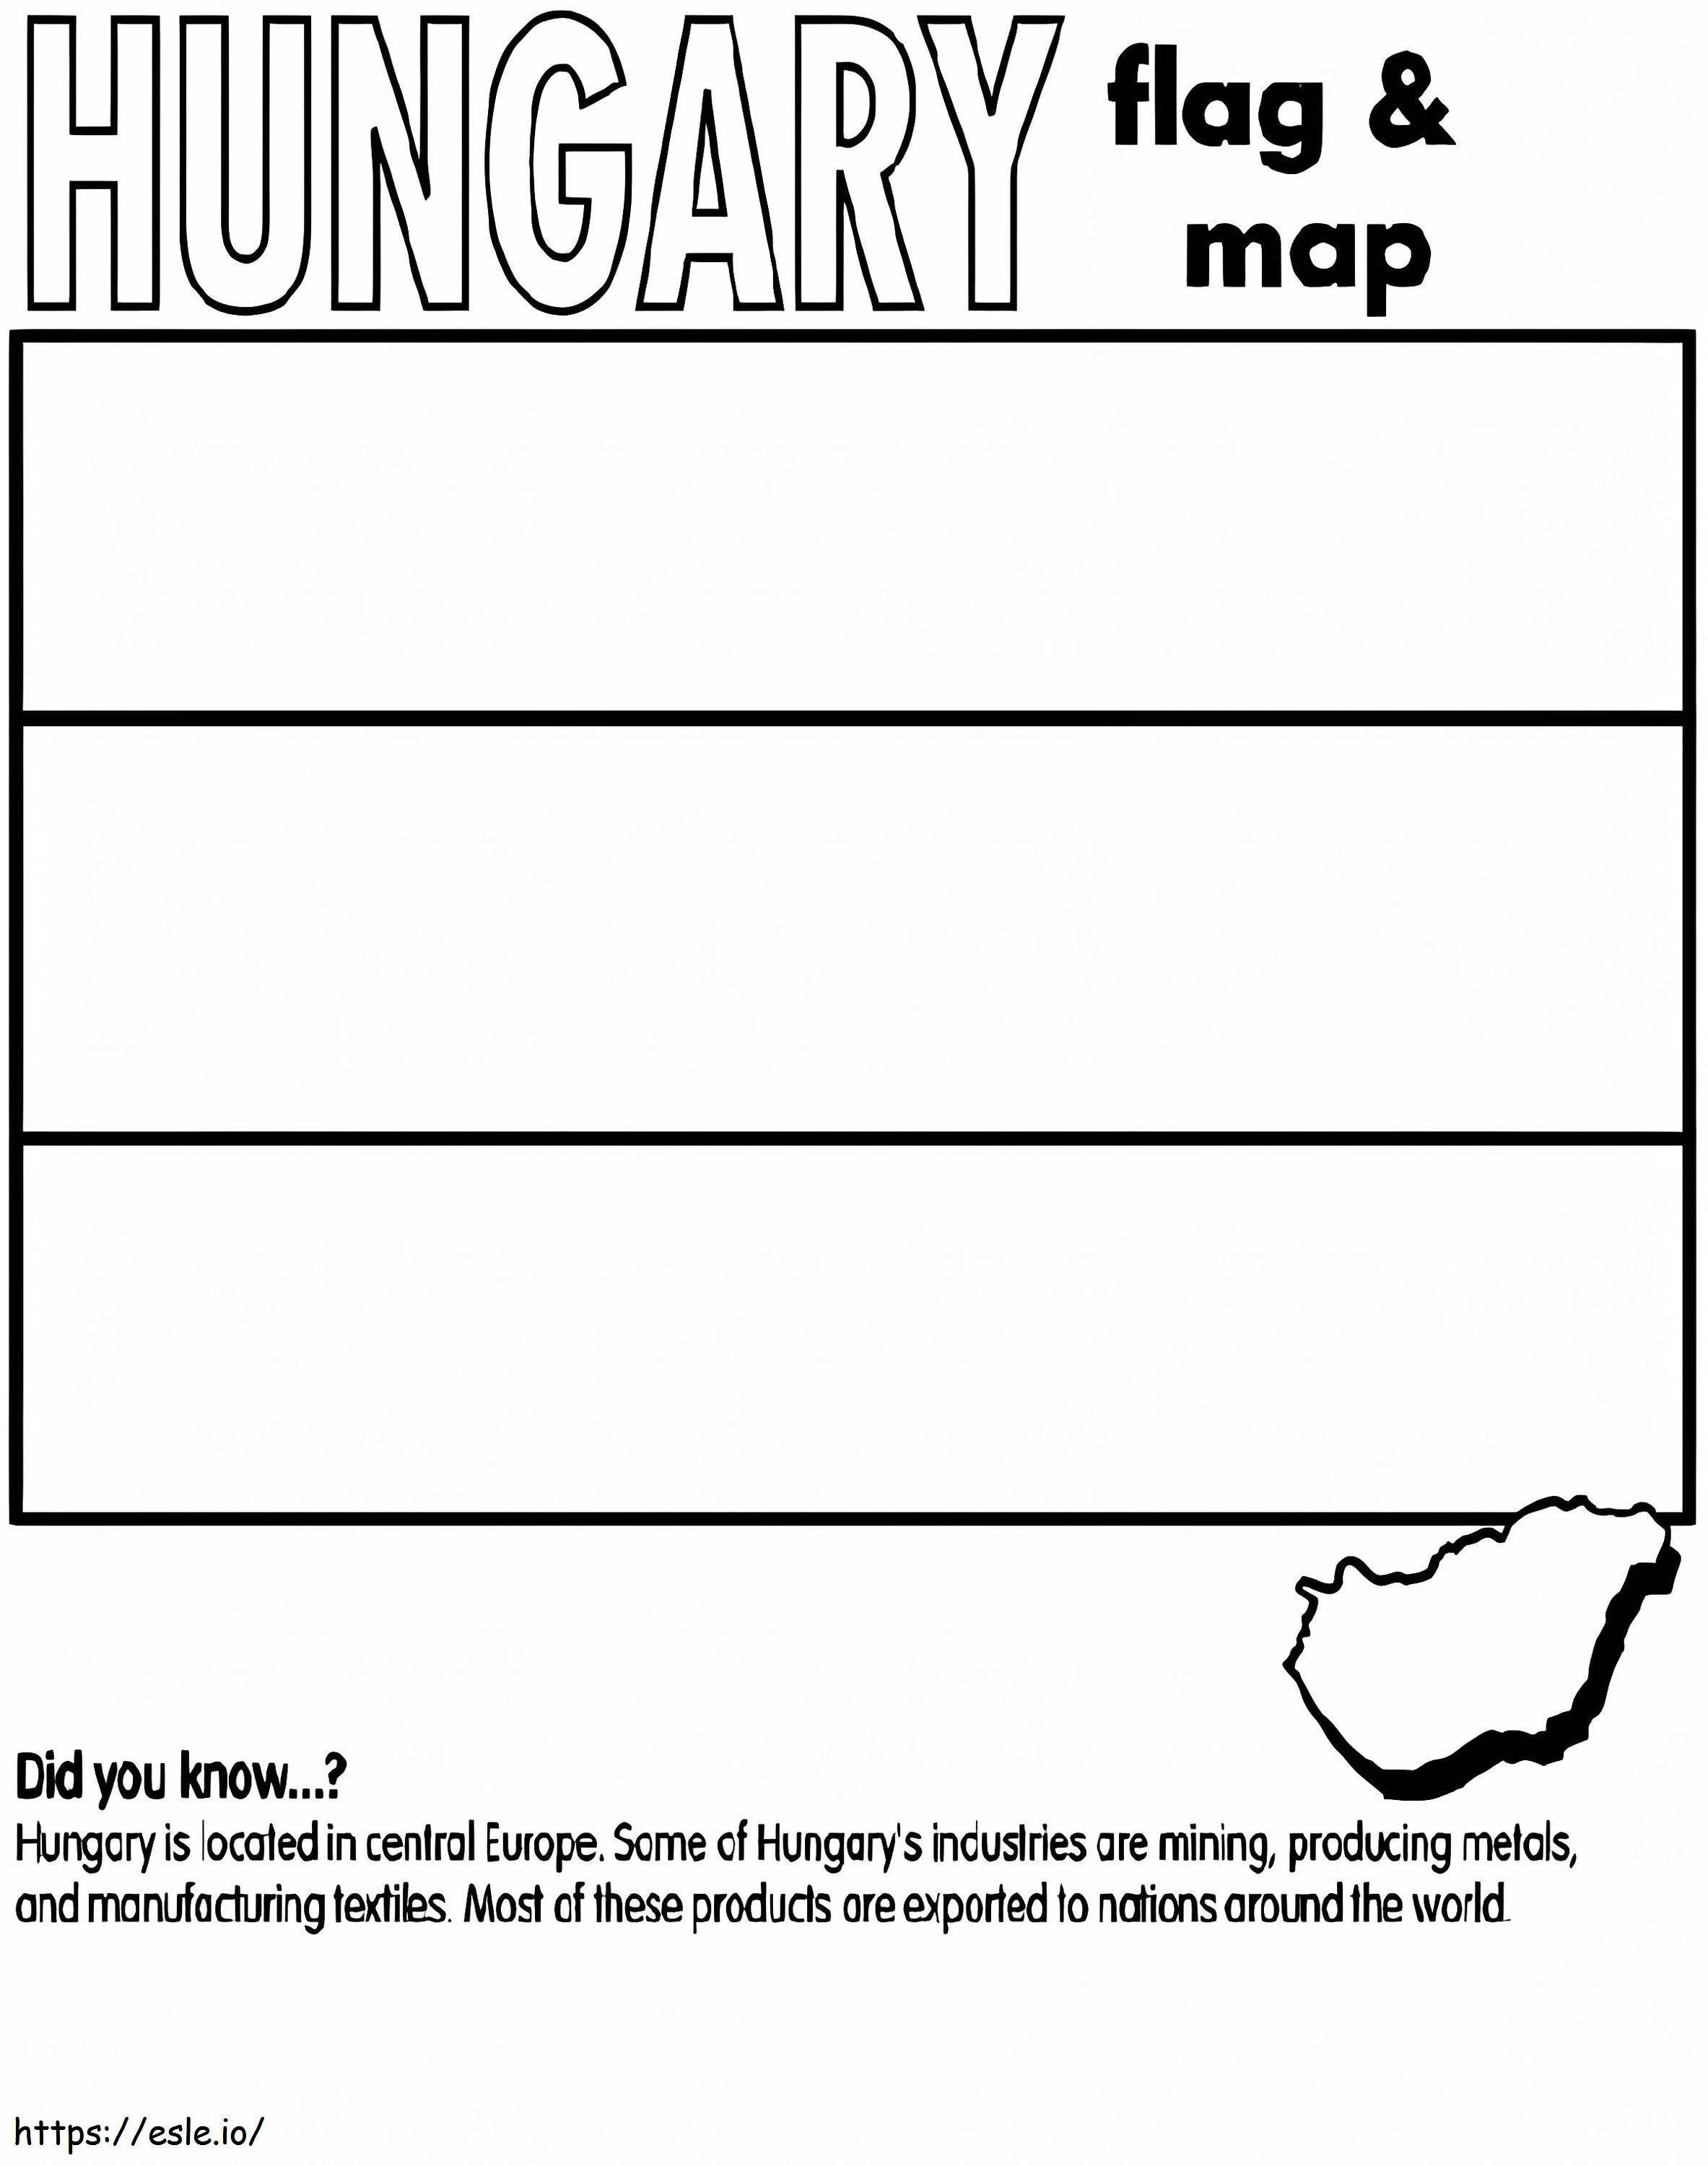 Bandiera e mappa dell'Ungheria da colorare